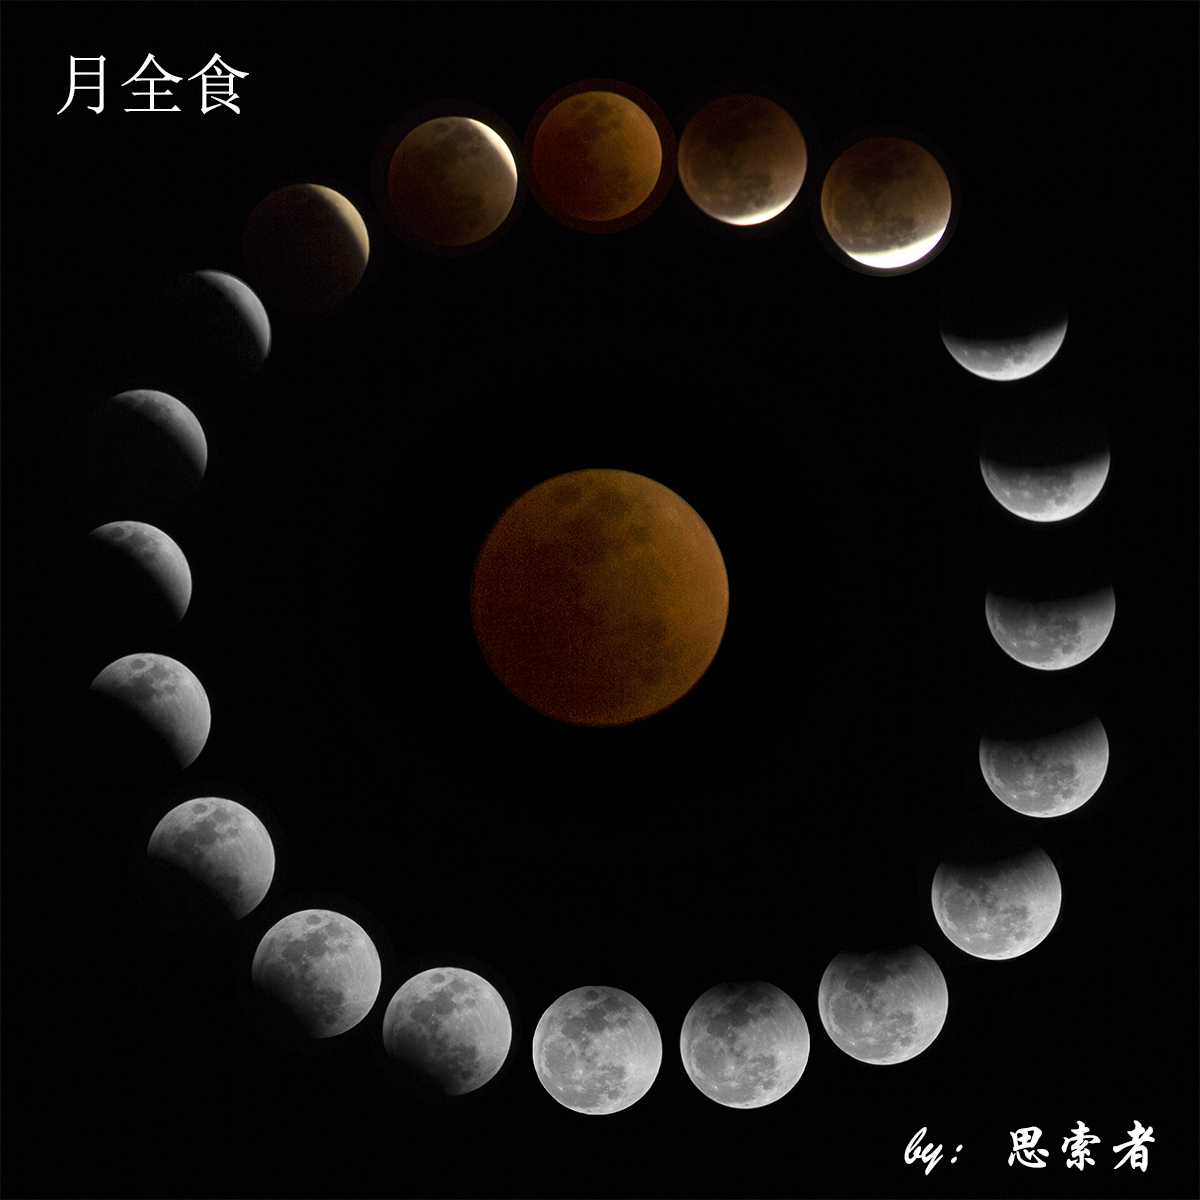 1月31日晚8:52"月全食血月"超级月亮"蓝月"三景合一的天文奇观